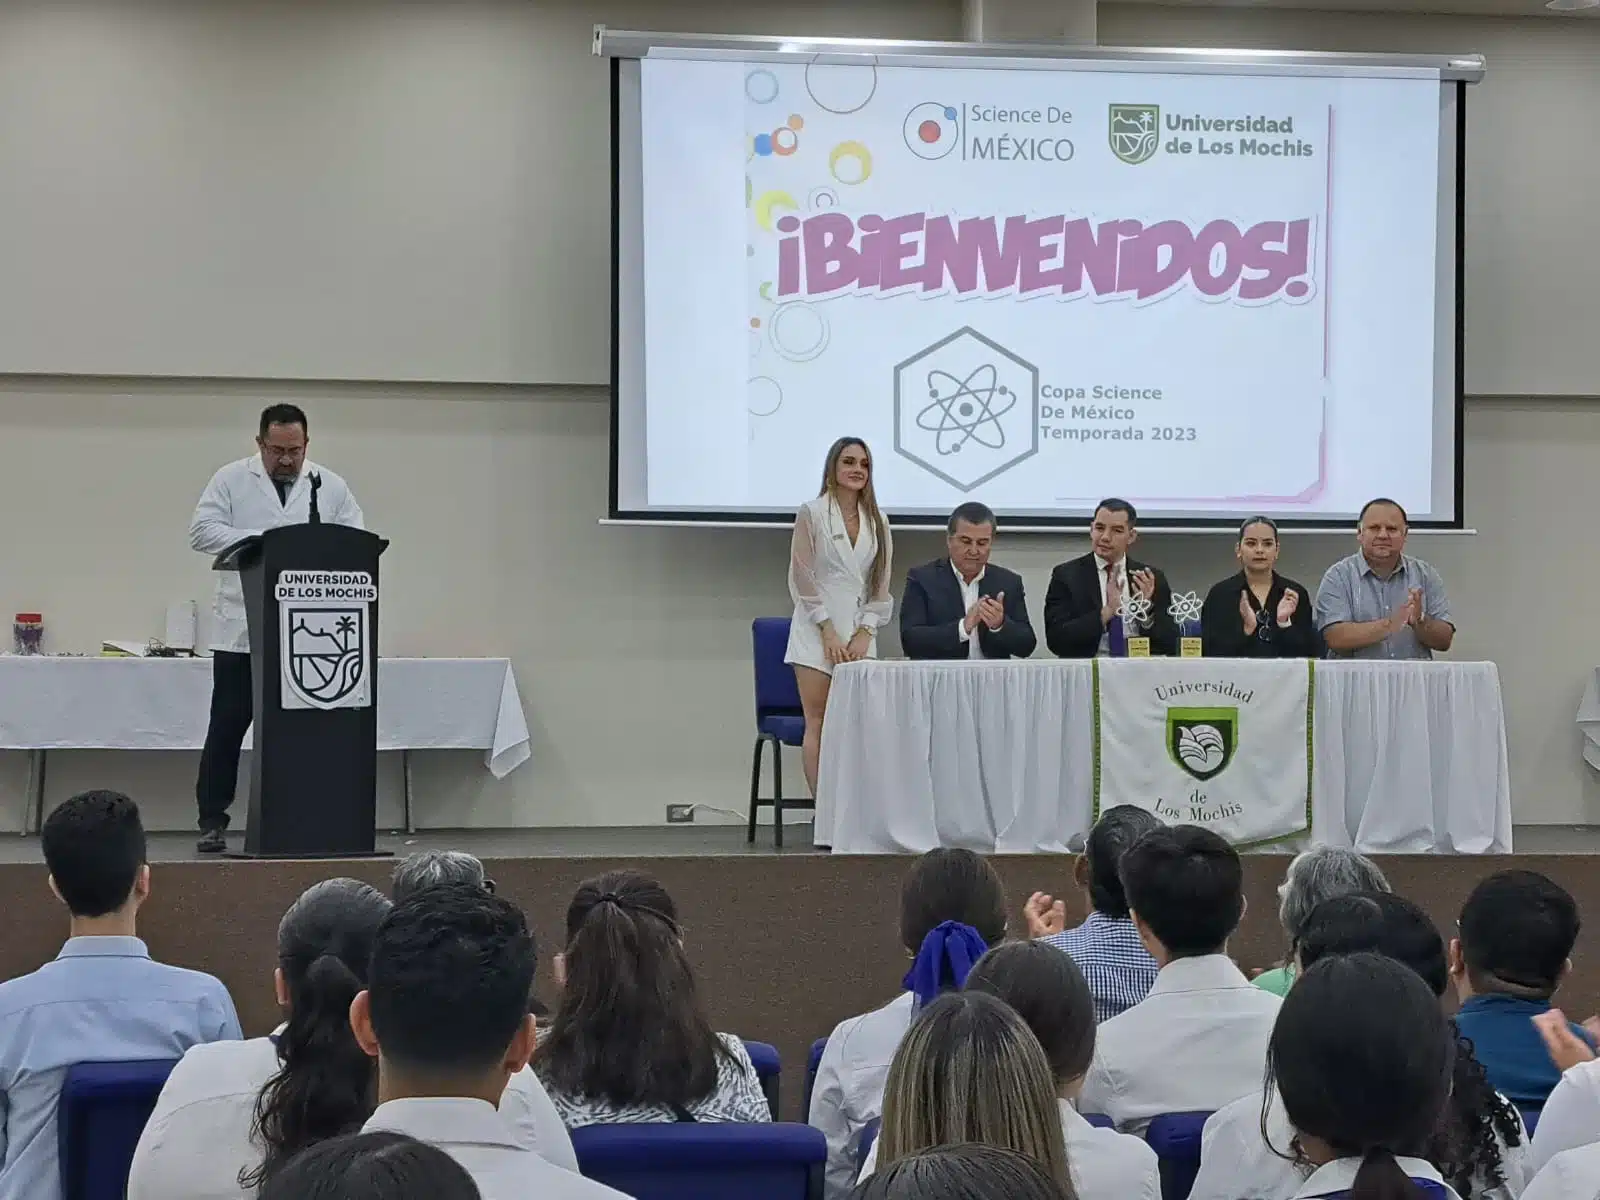 Copa Science de México Temporada 2023 en la Universidad de Los Mochis